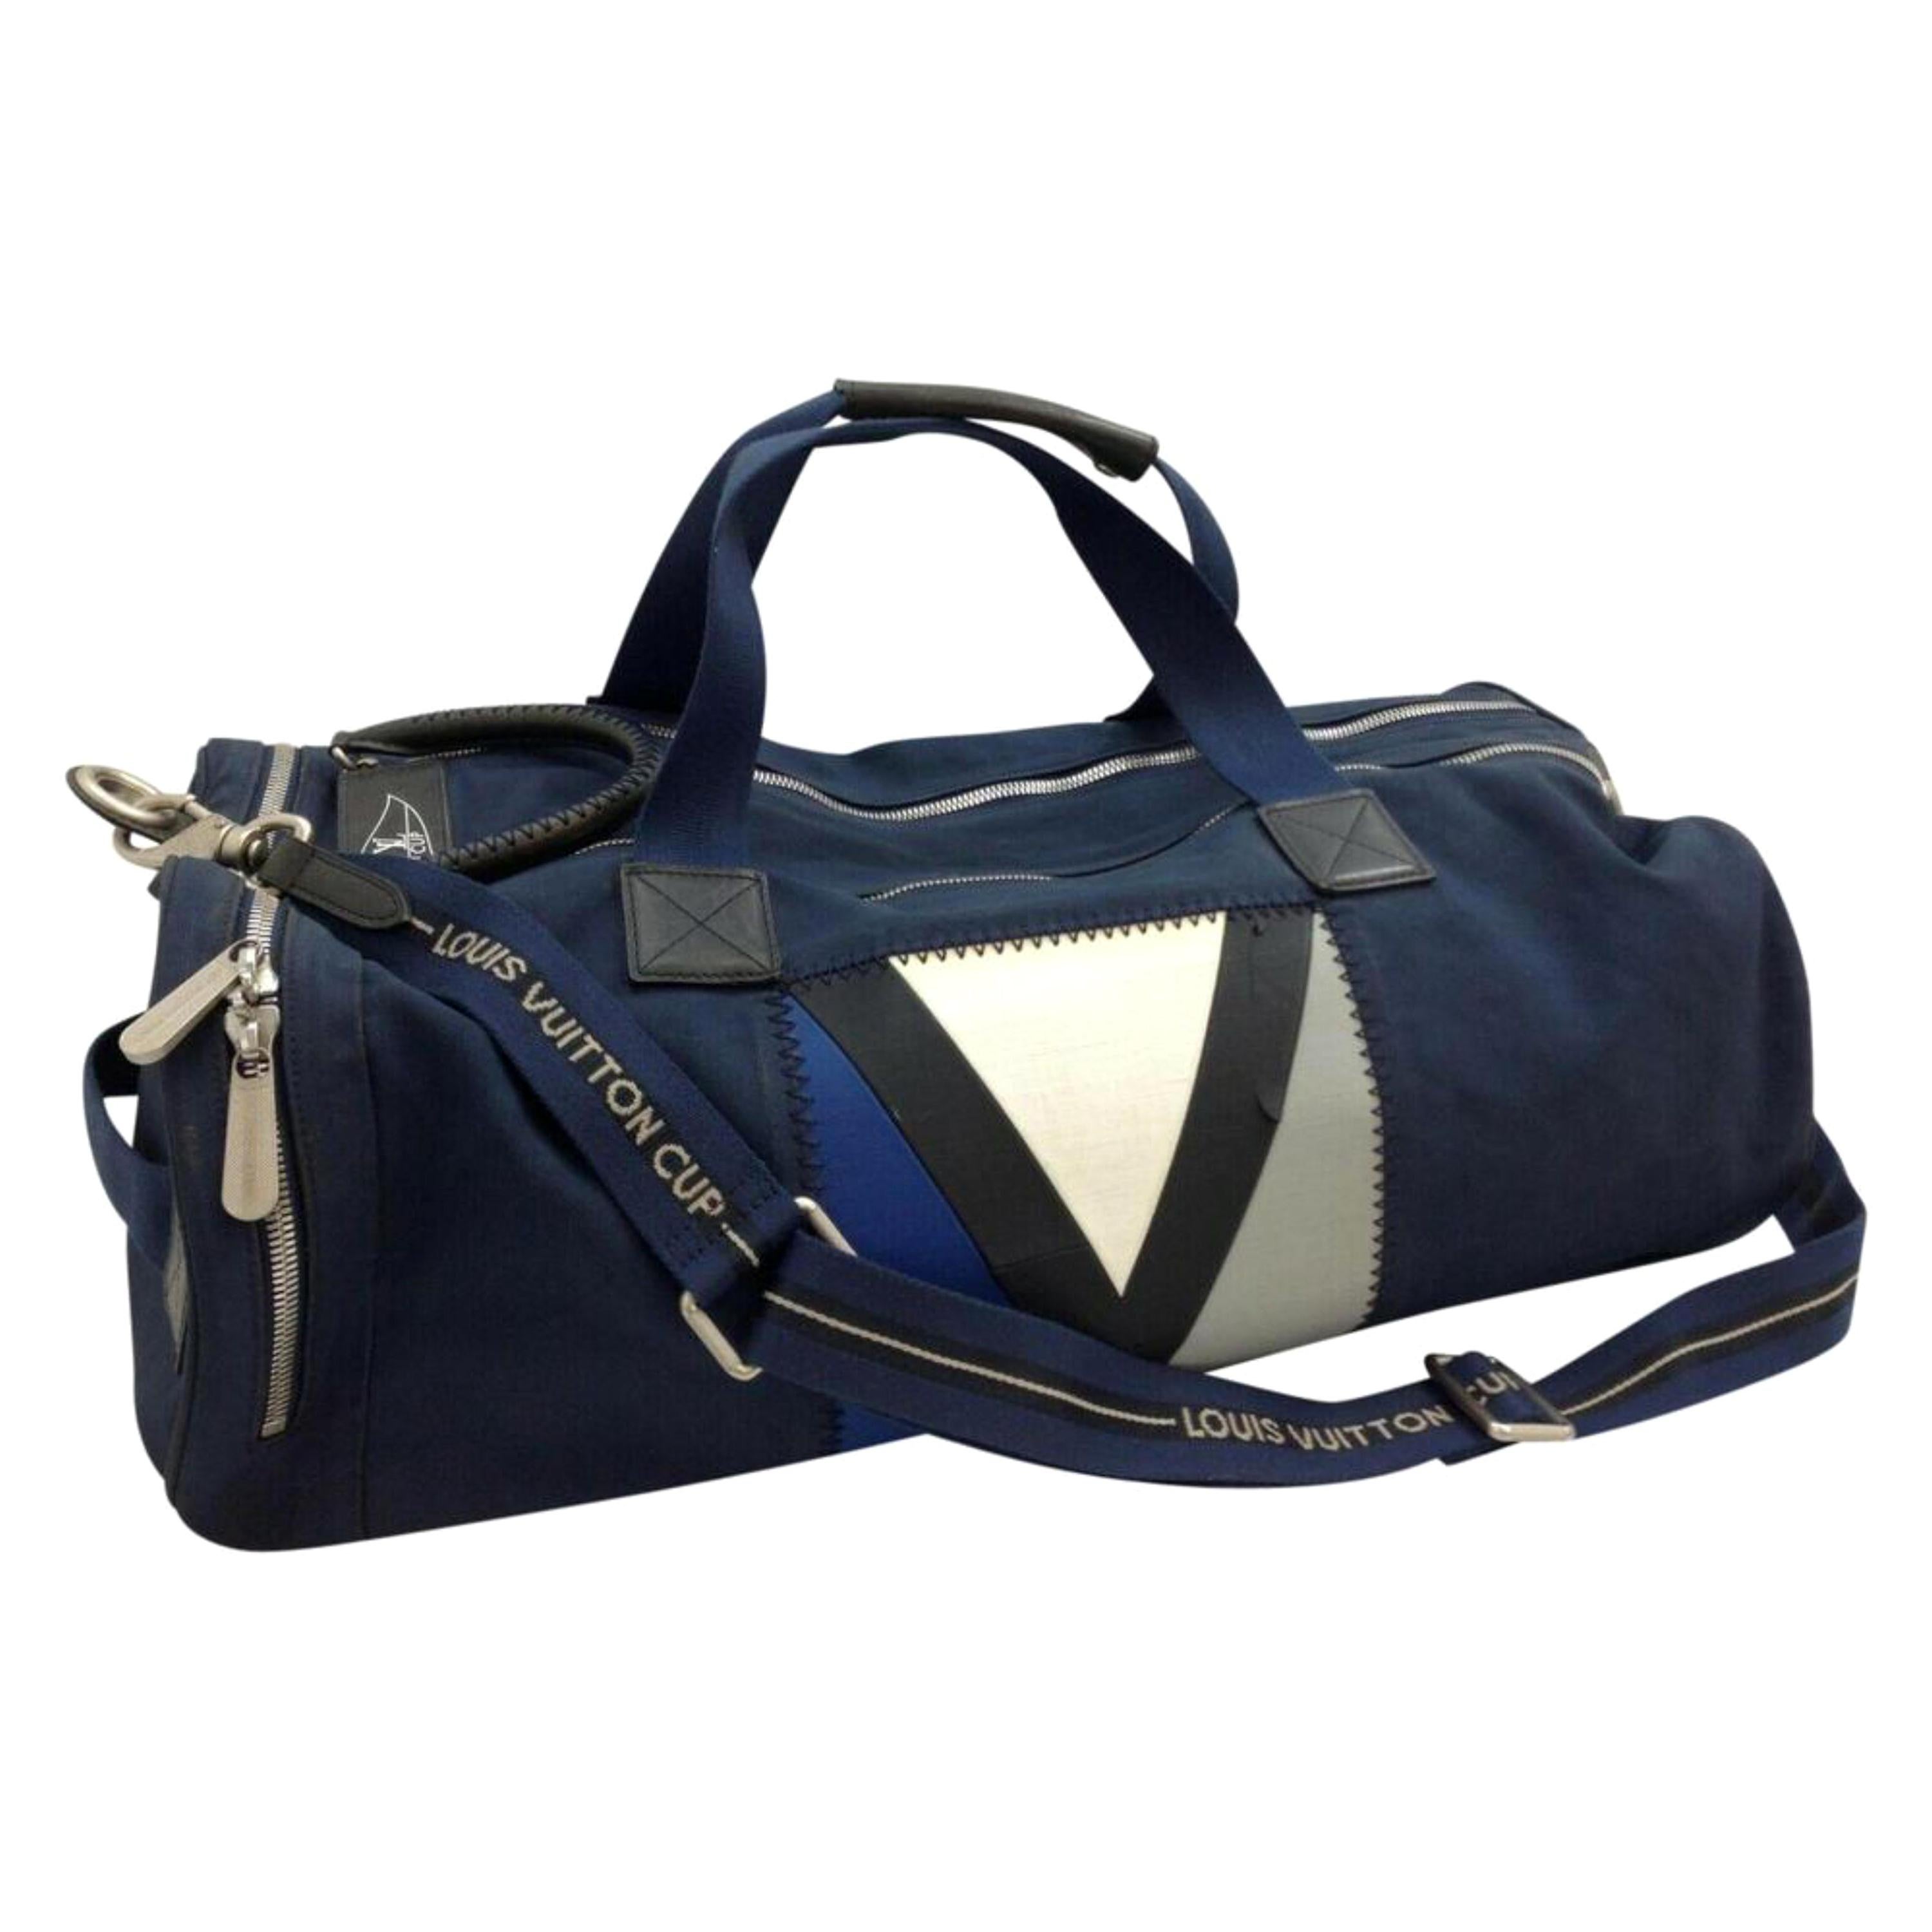 Louis Vuitton Duffle Lv Cup Gaston V Boston 870305 Blue Canvas Shoulder Bag For Sale